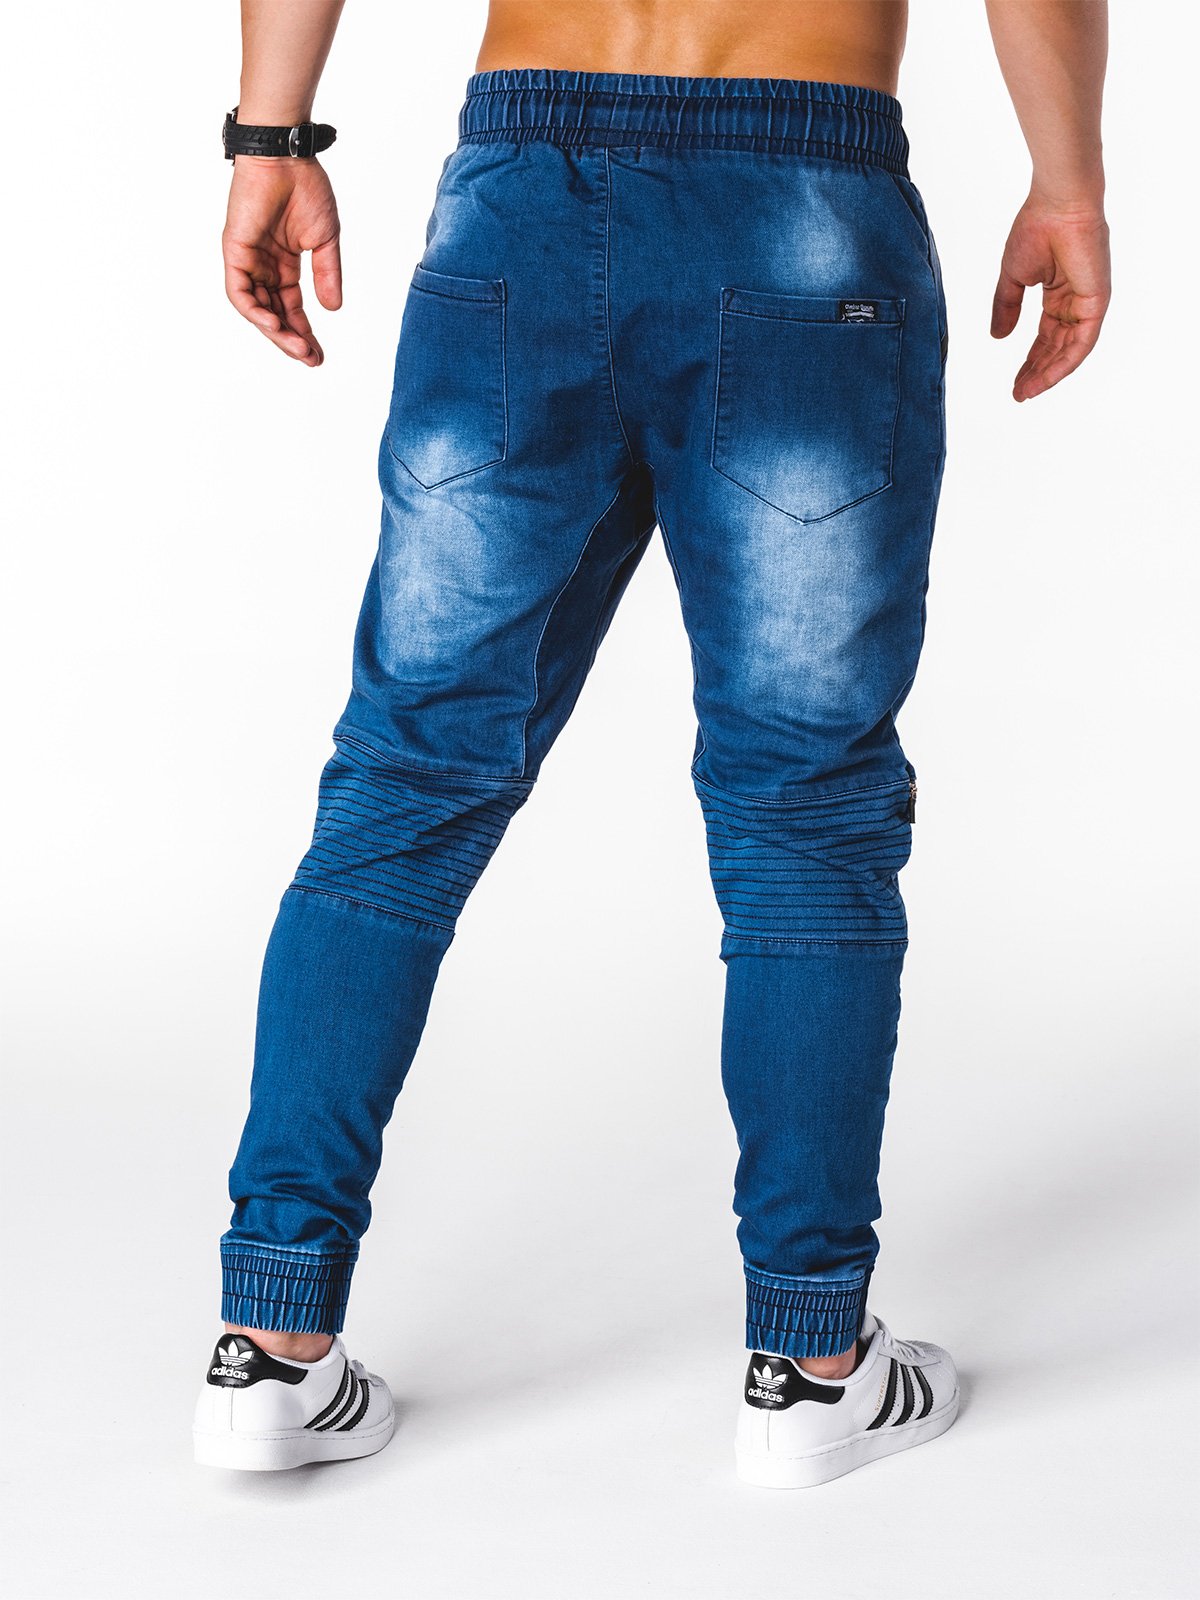 Men's pants joggers - blue P886  MODONE wholesale - Clothing For Men